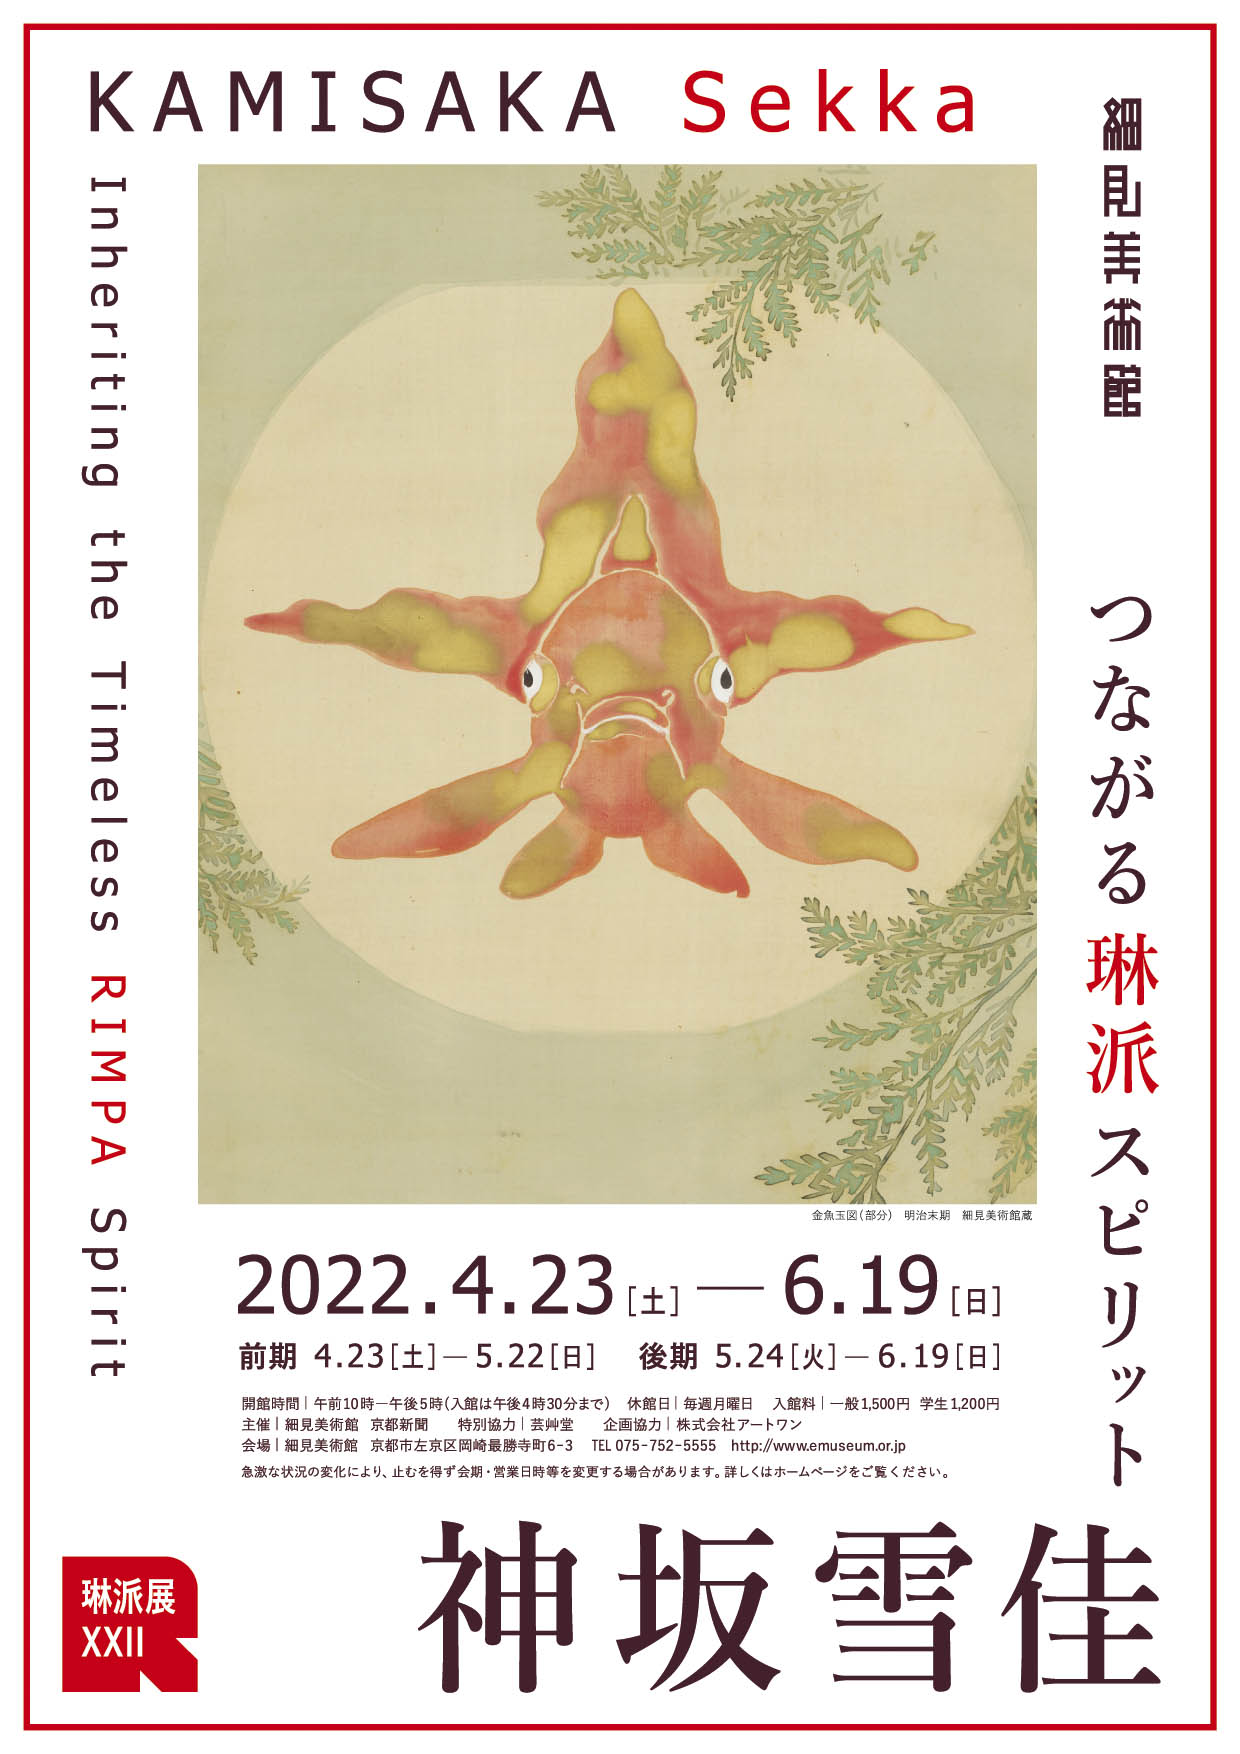 モダンで愛らしい美の世界。京都・細見美術館で開催中の「琳派展22　つながる琳派スピリット 神坂雪佳」展